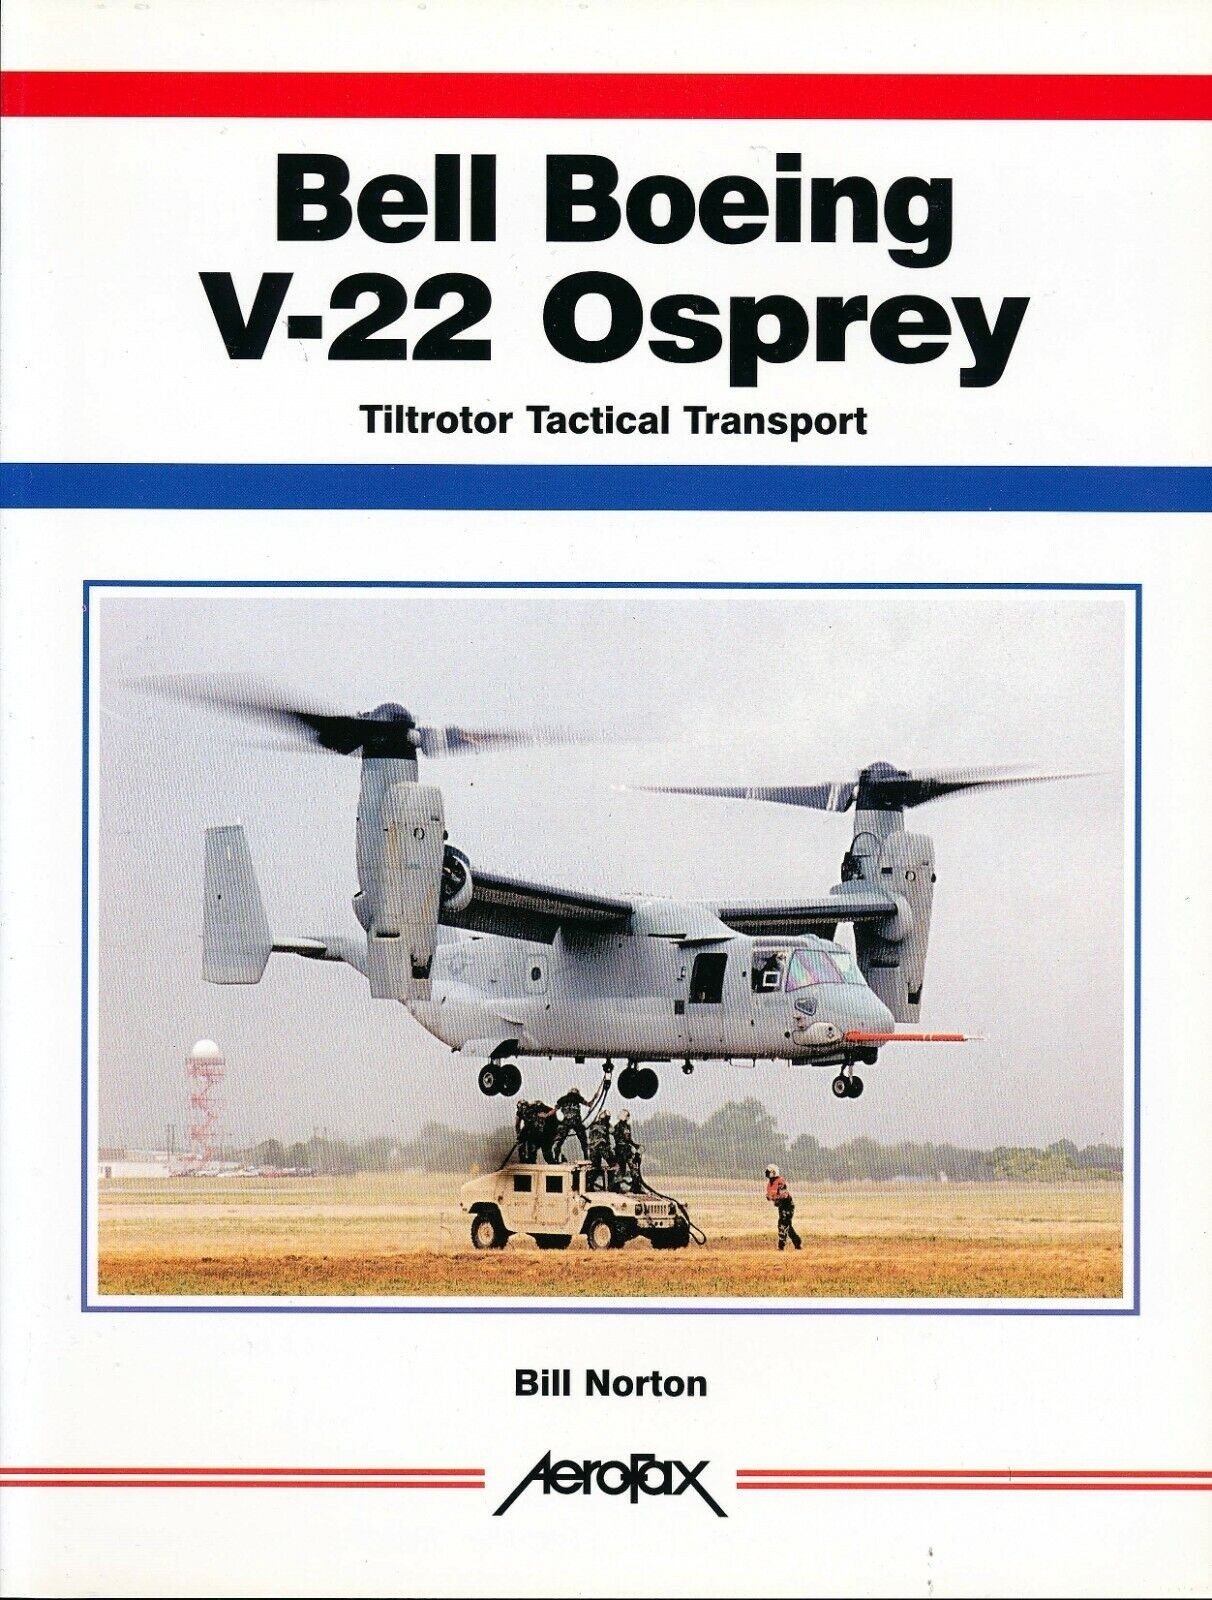 Bell Boeing V-22 Osprey - Tiltrotor Tactical Transport